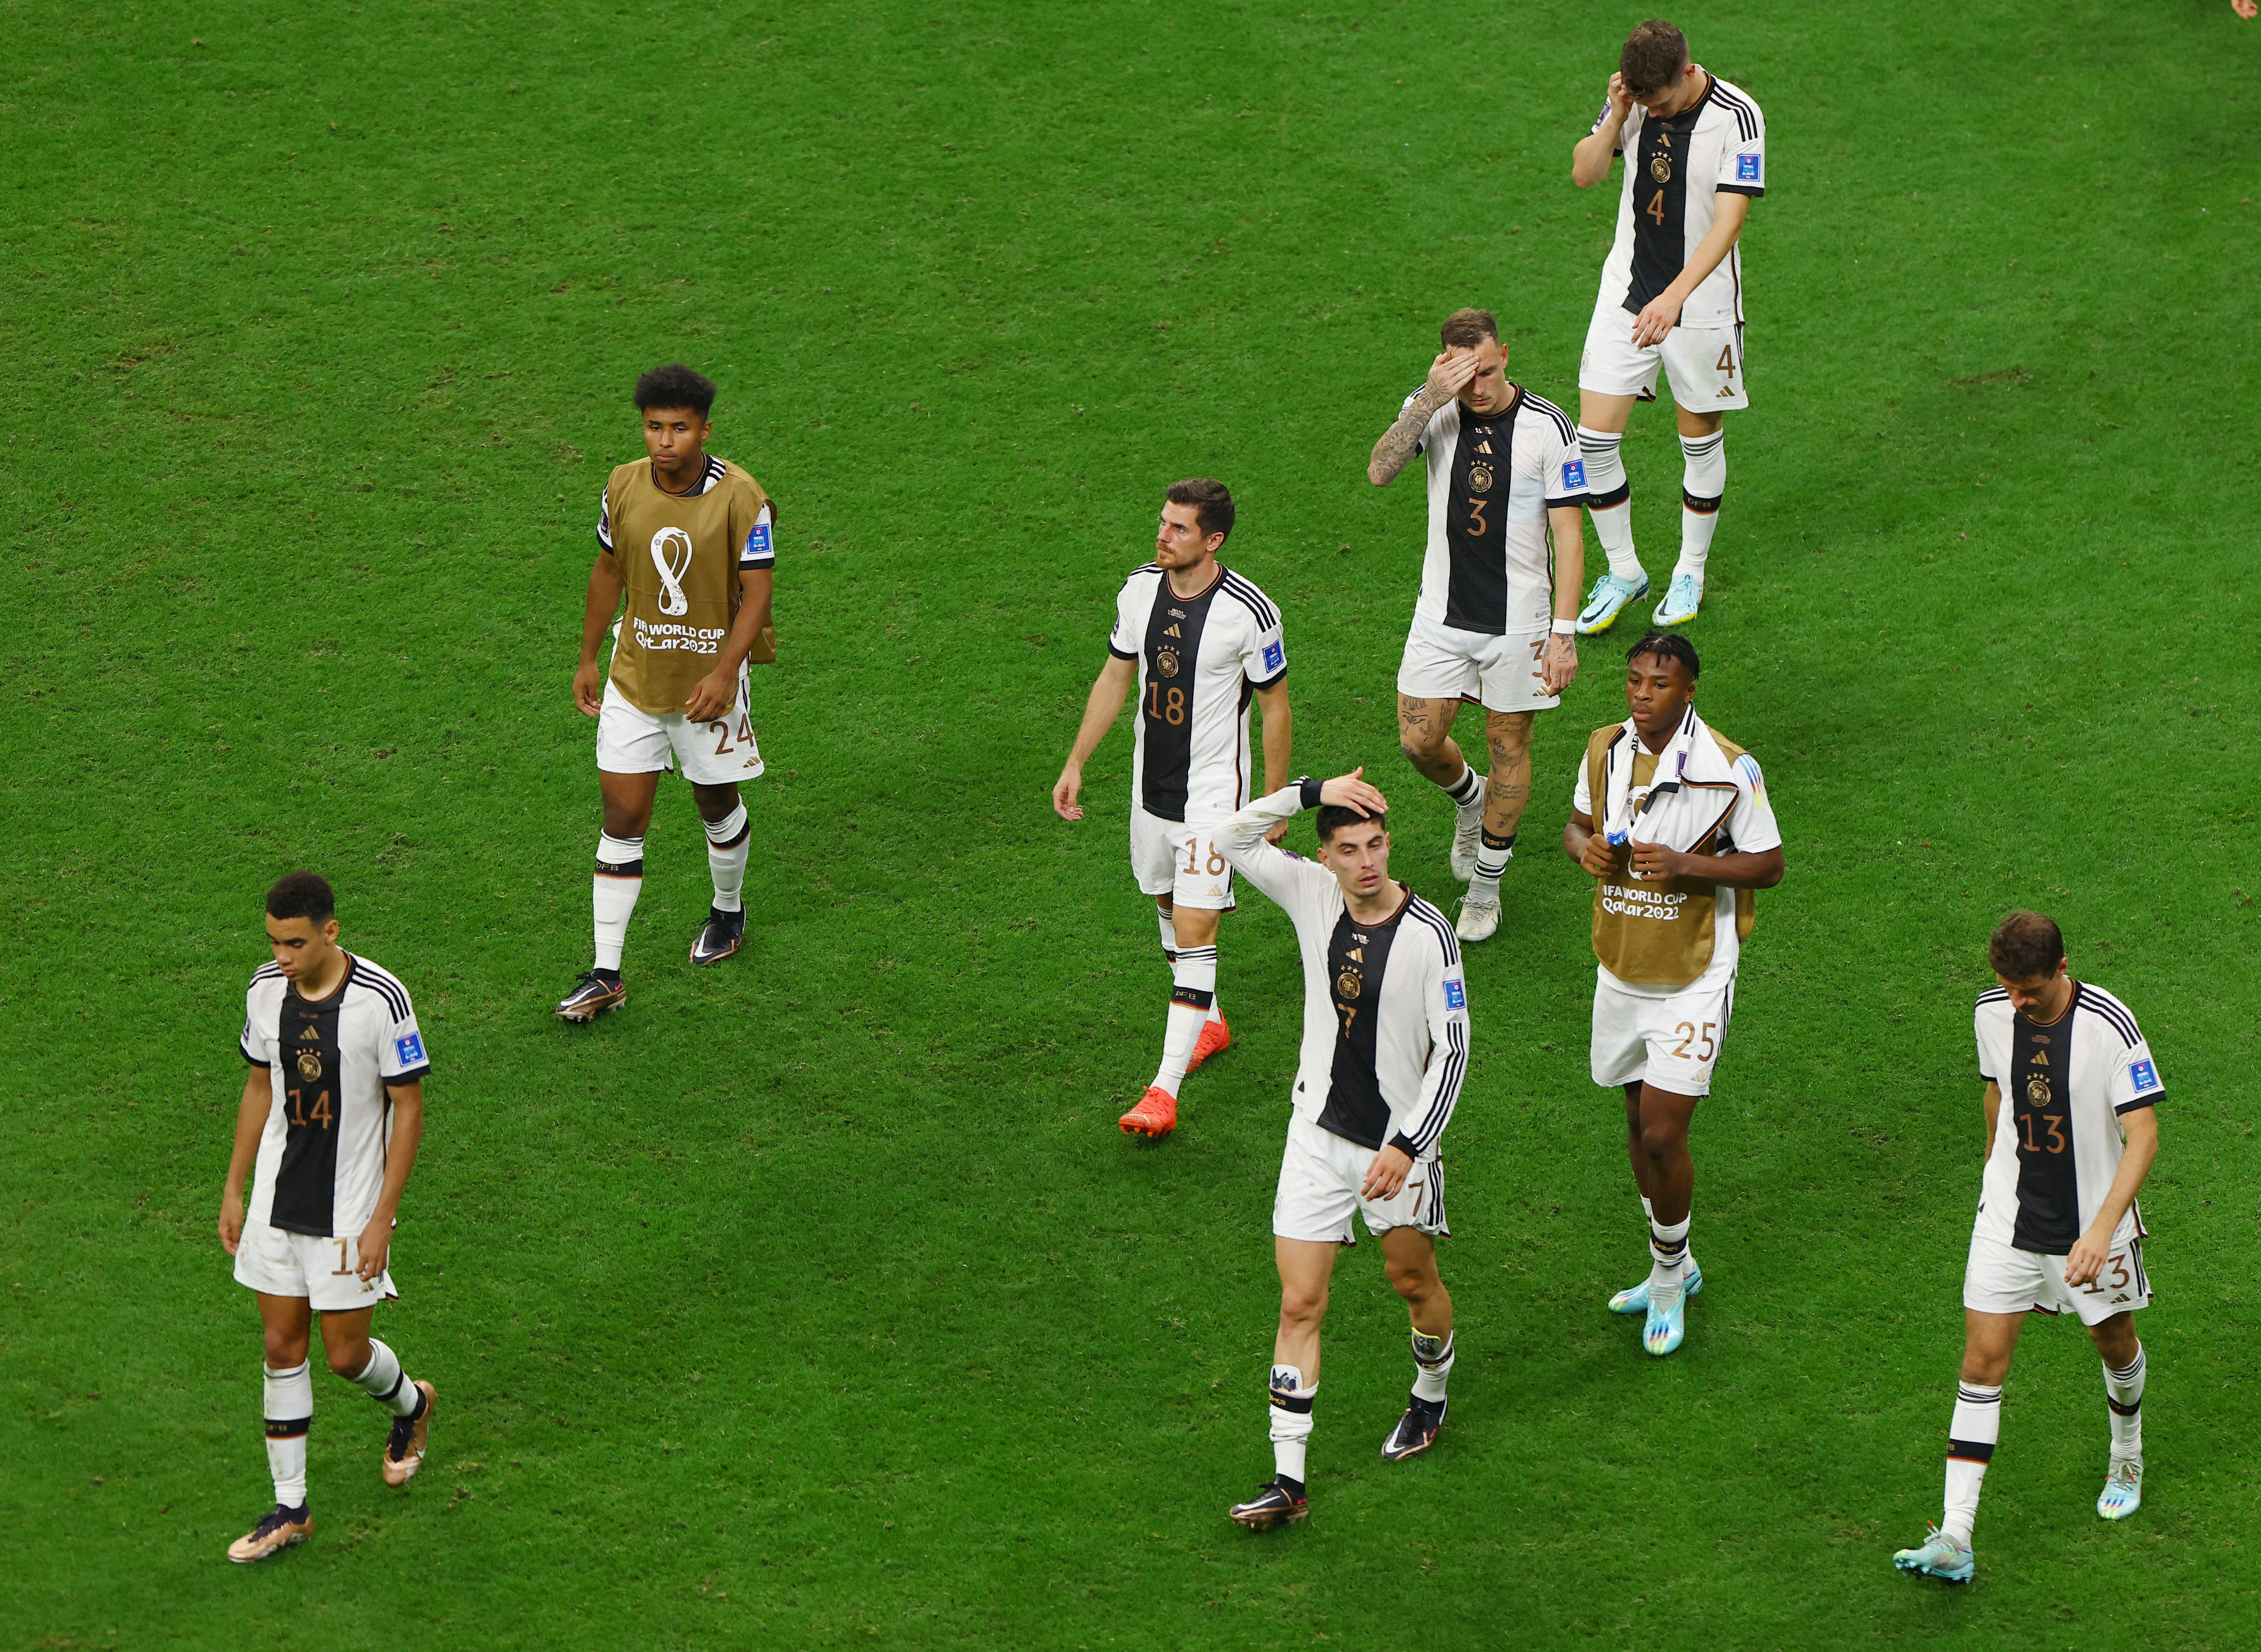 Alemania finalizó tercero del grupo E con cuatro puntos. España tenía el mismo puntaje, pero poseía mejor diferencia de gol